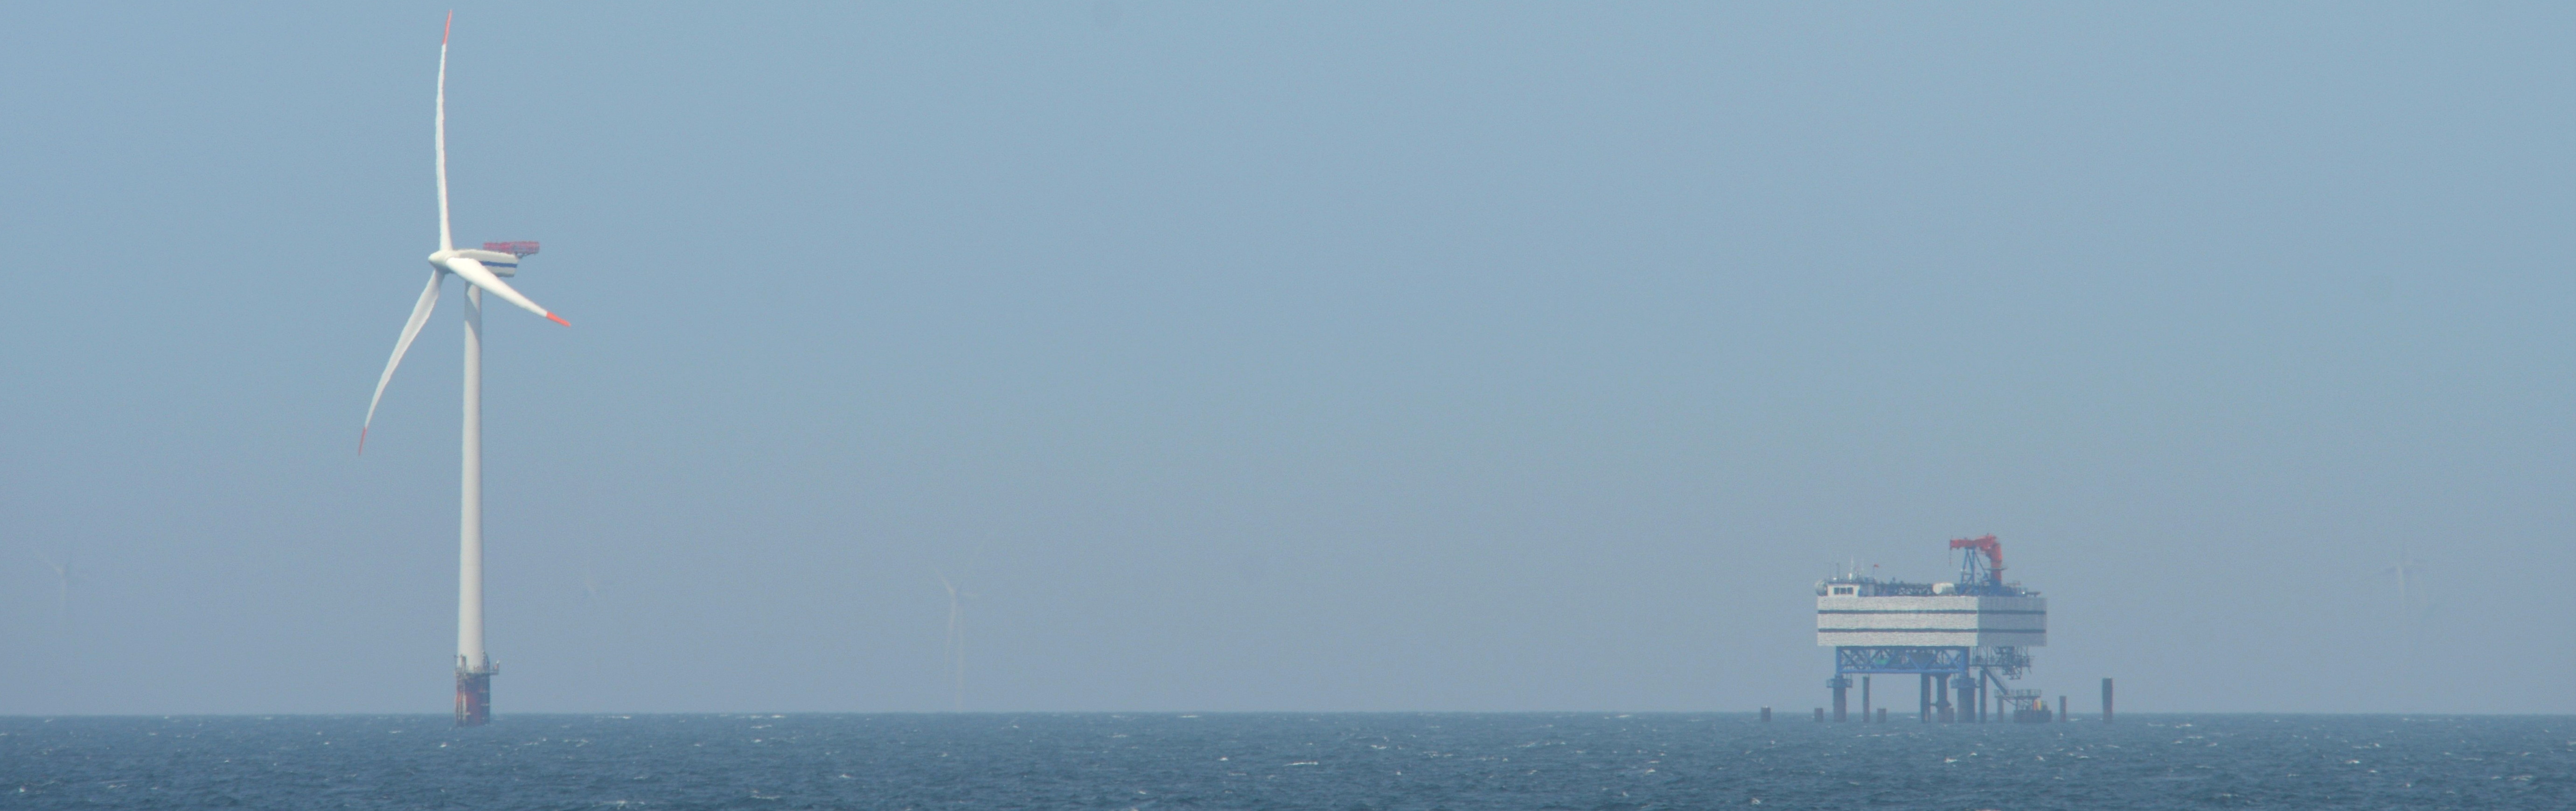 Eine Offshore-Windenergieanlage und eine Umspannplattform im Meer.